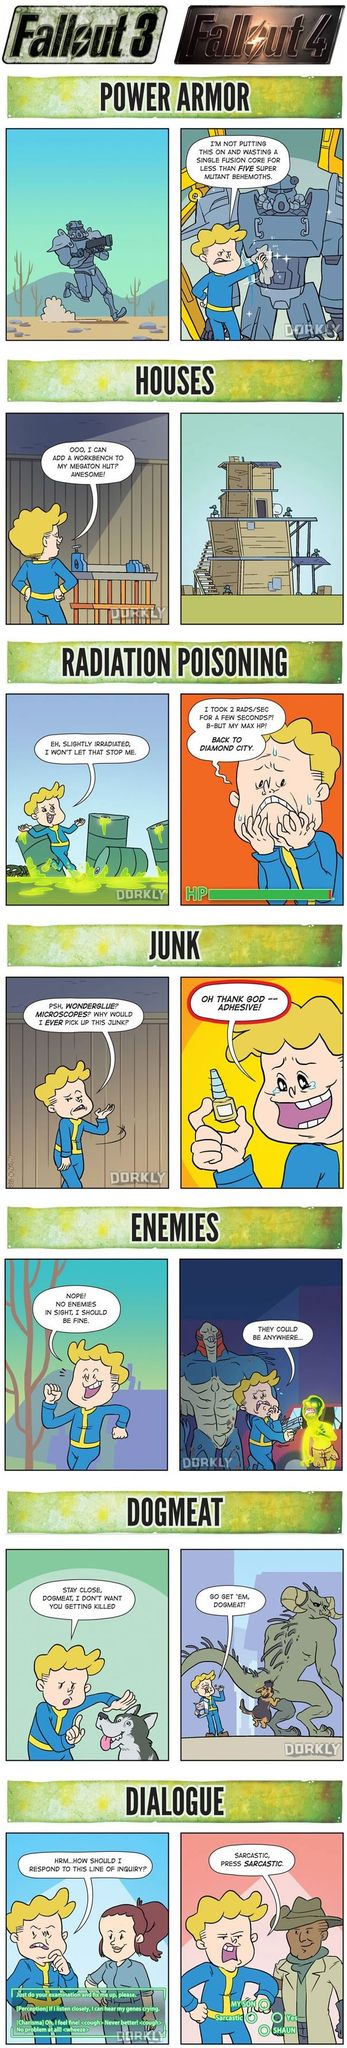 Fallout 3 VS Fallout 4 - meme